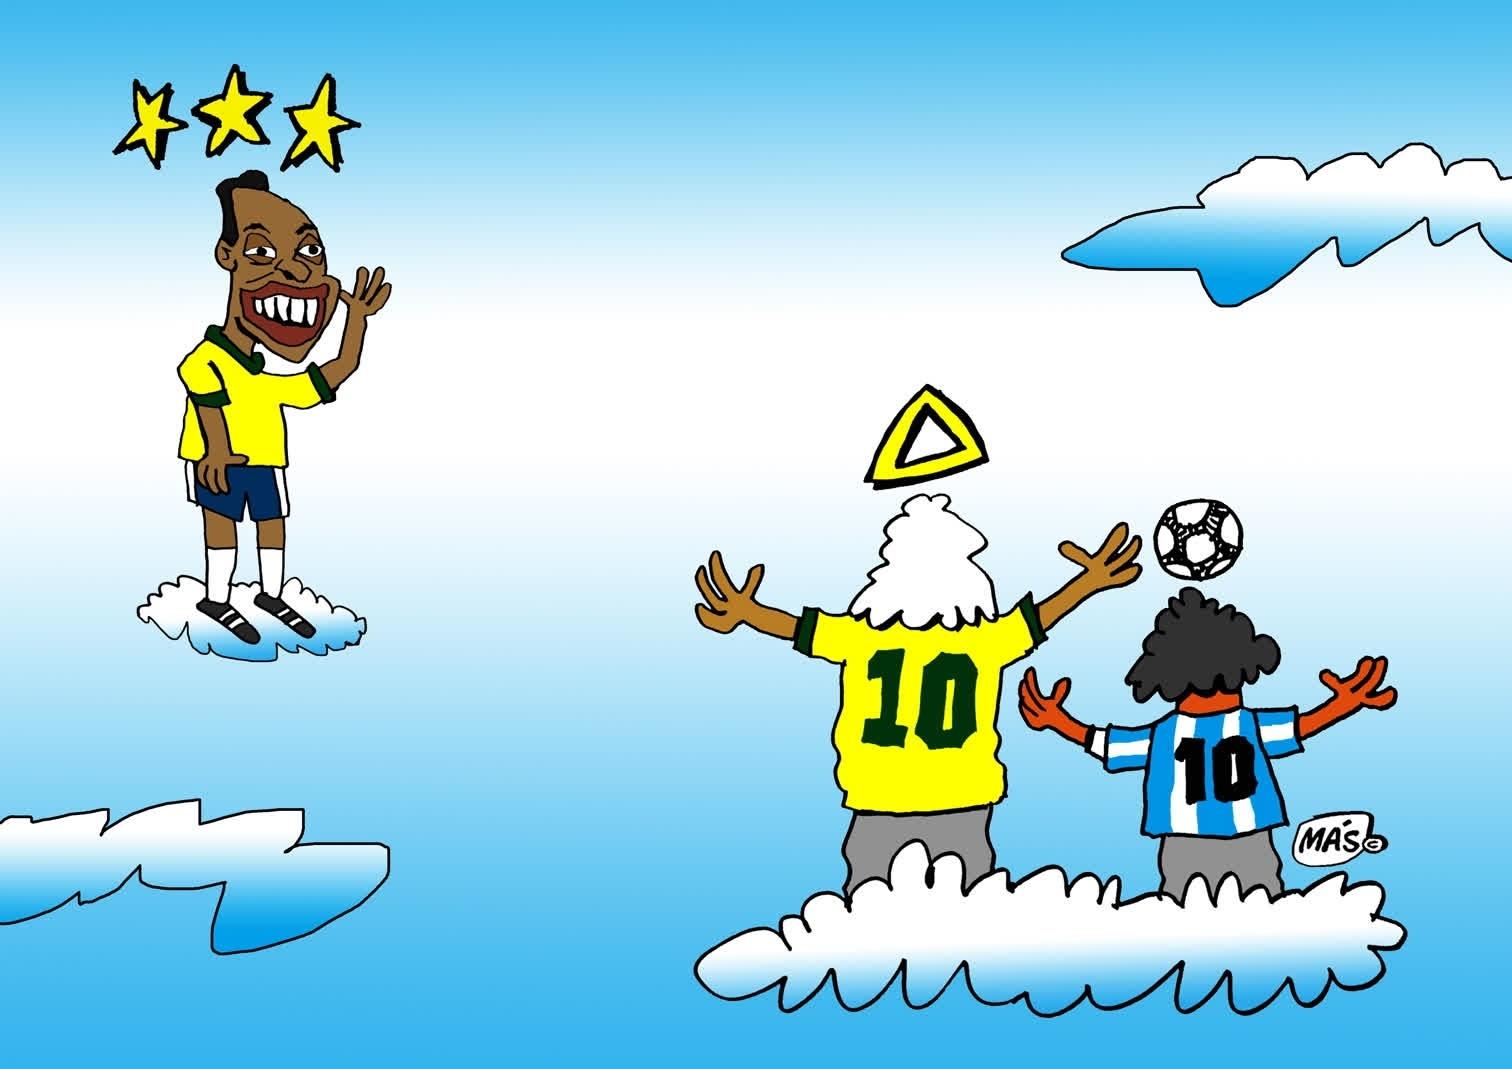 Veja as postagens dos times candangos em homenagem ao Rei Pelé